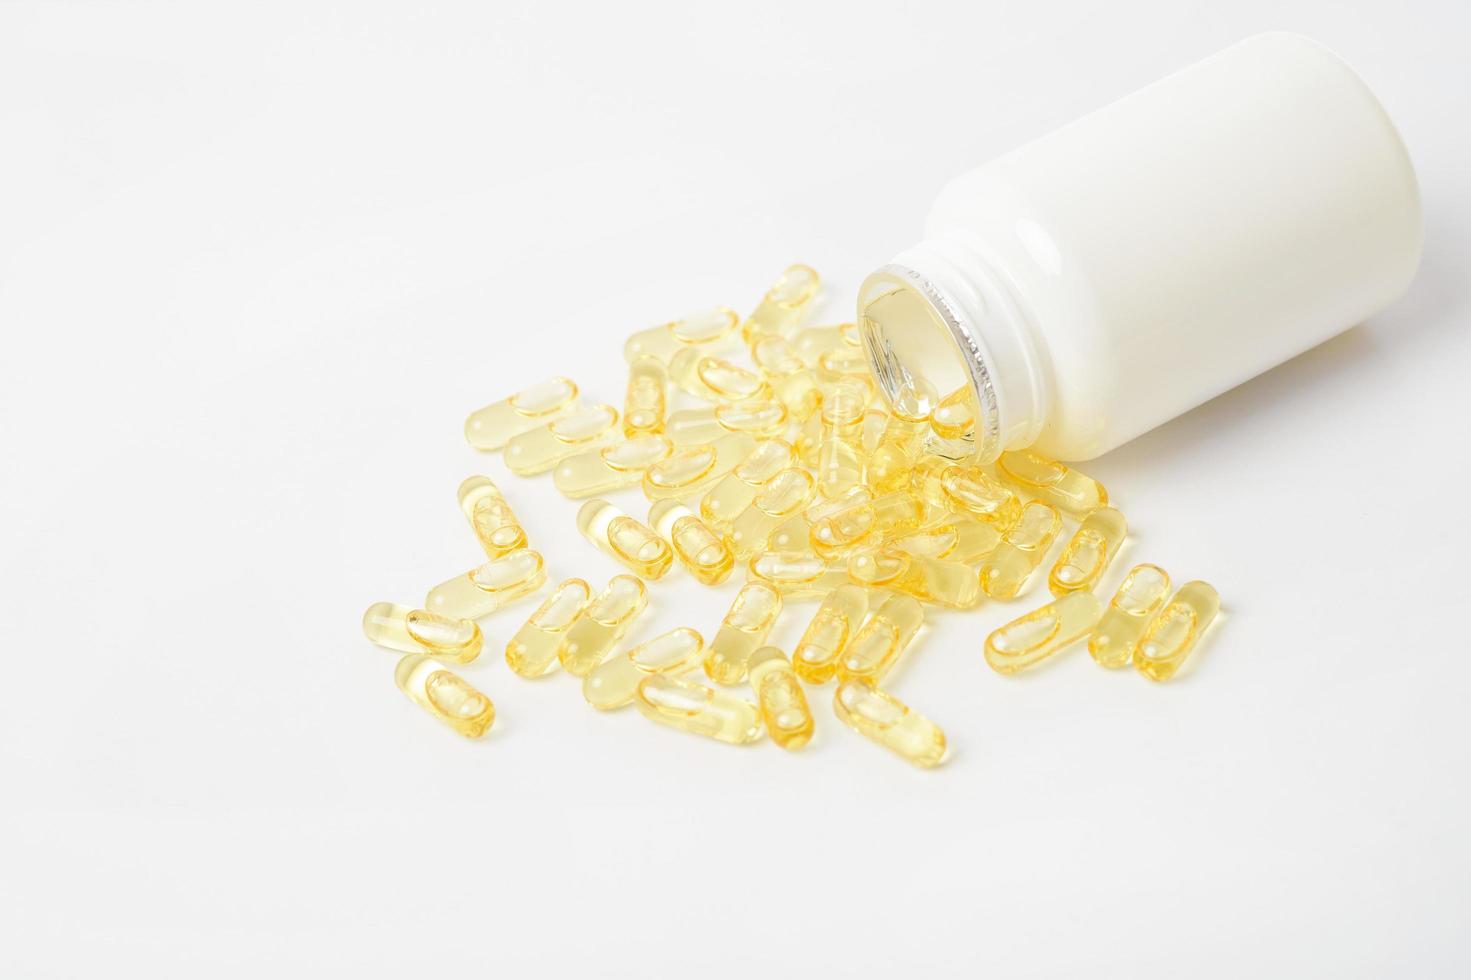 montes de pílulas de vitaminas amarelas no fundo branco foto